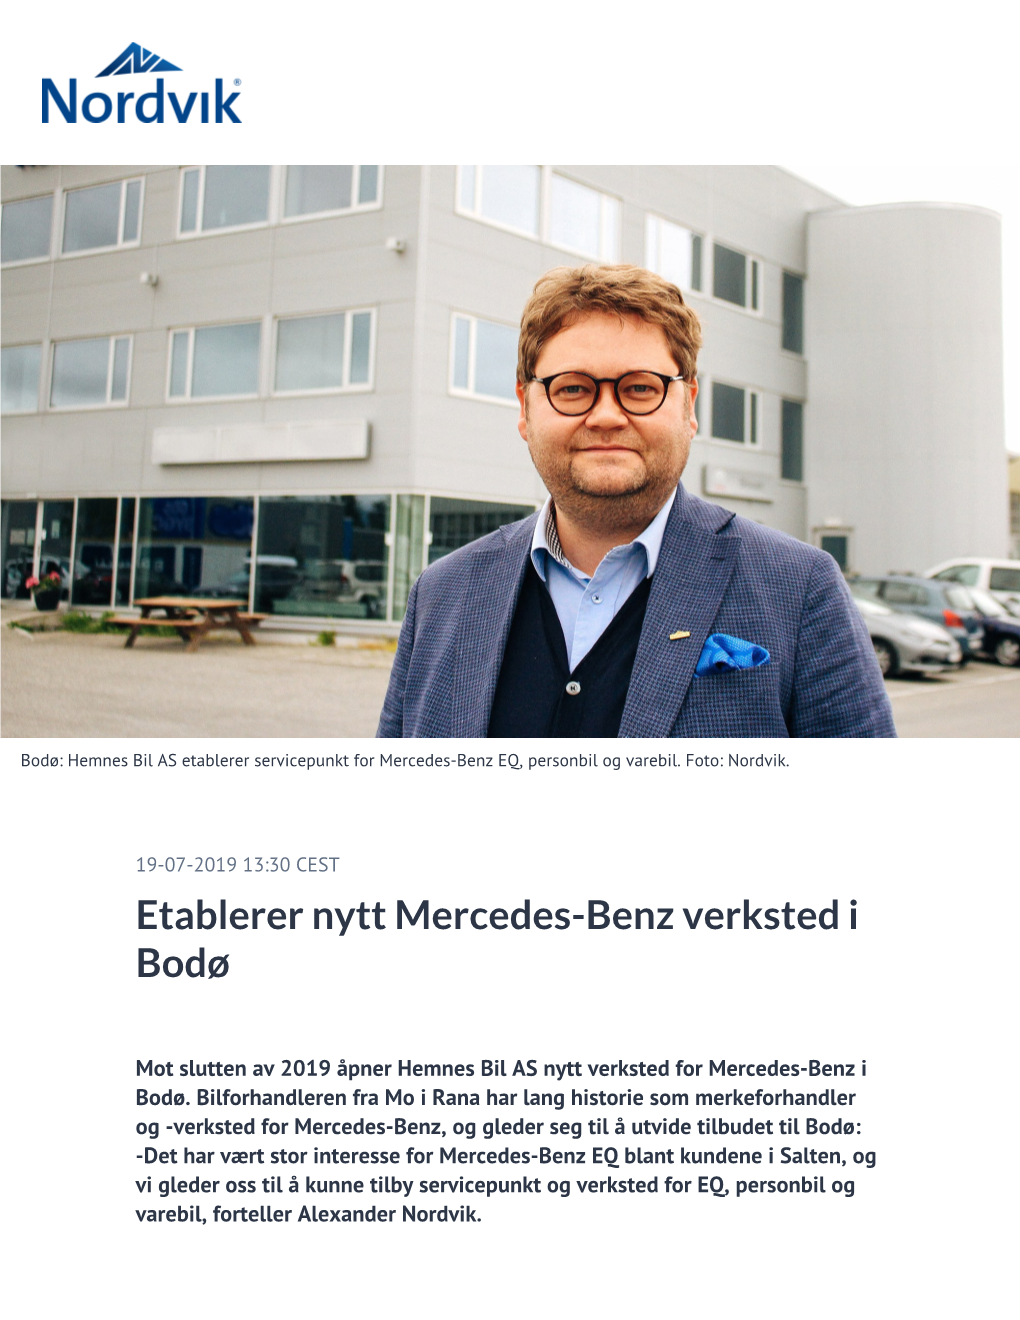 Etablerer Nytt Mercedes-Benz Verksted I Bodø